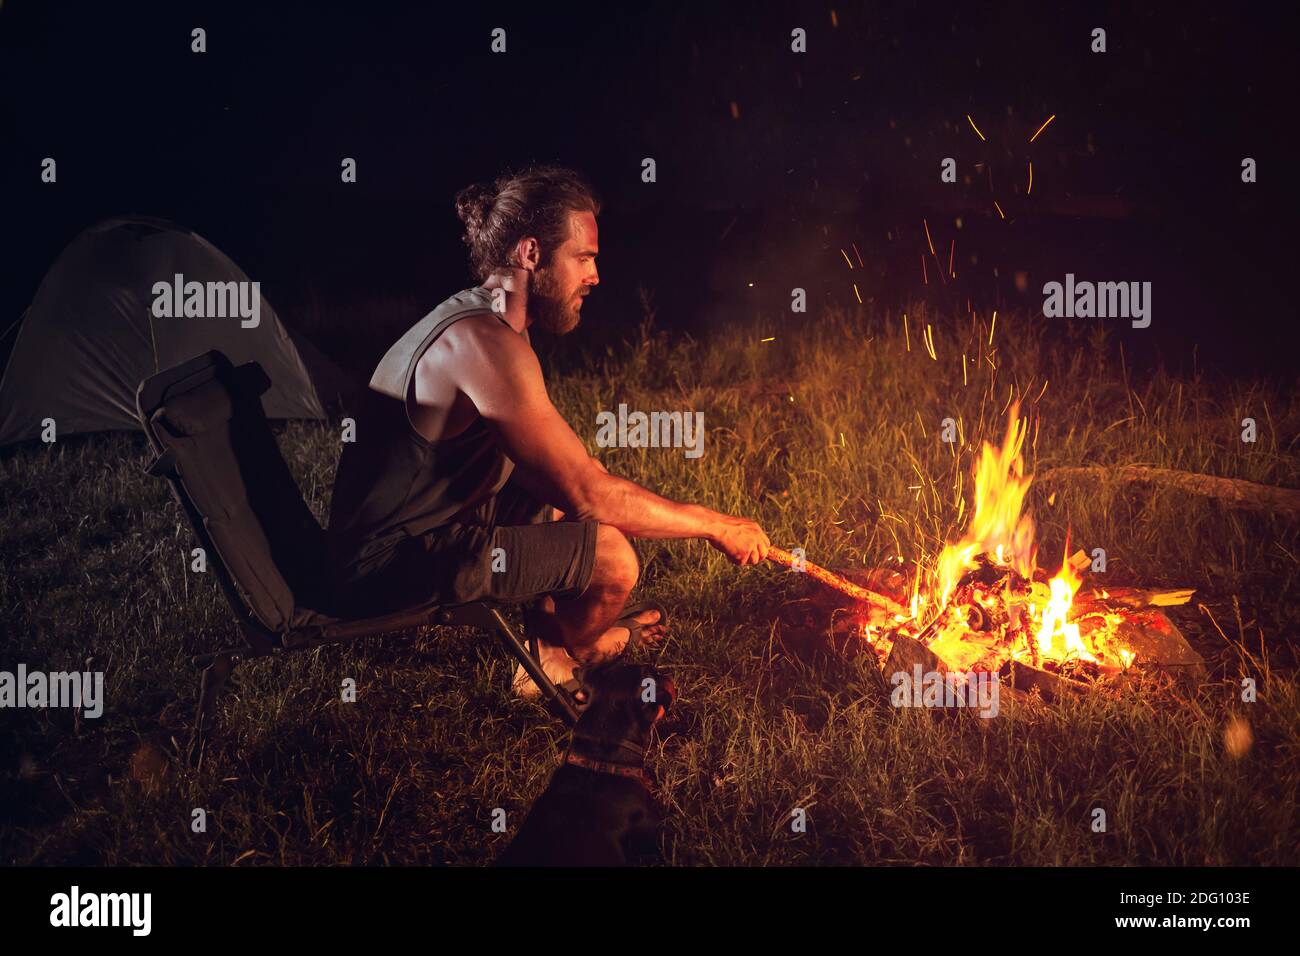 Hombre acampando al aire libre por la noche sentado junto a una hoguera Foto de stock